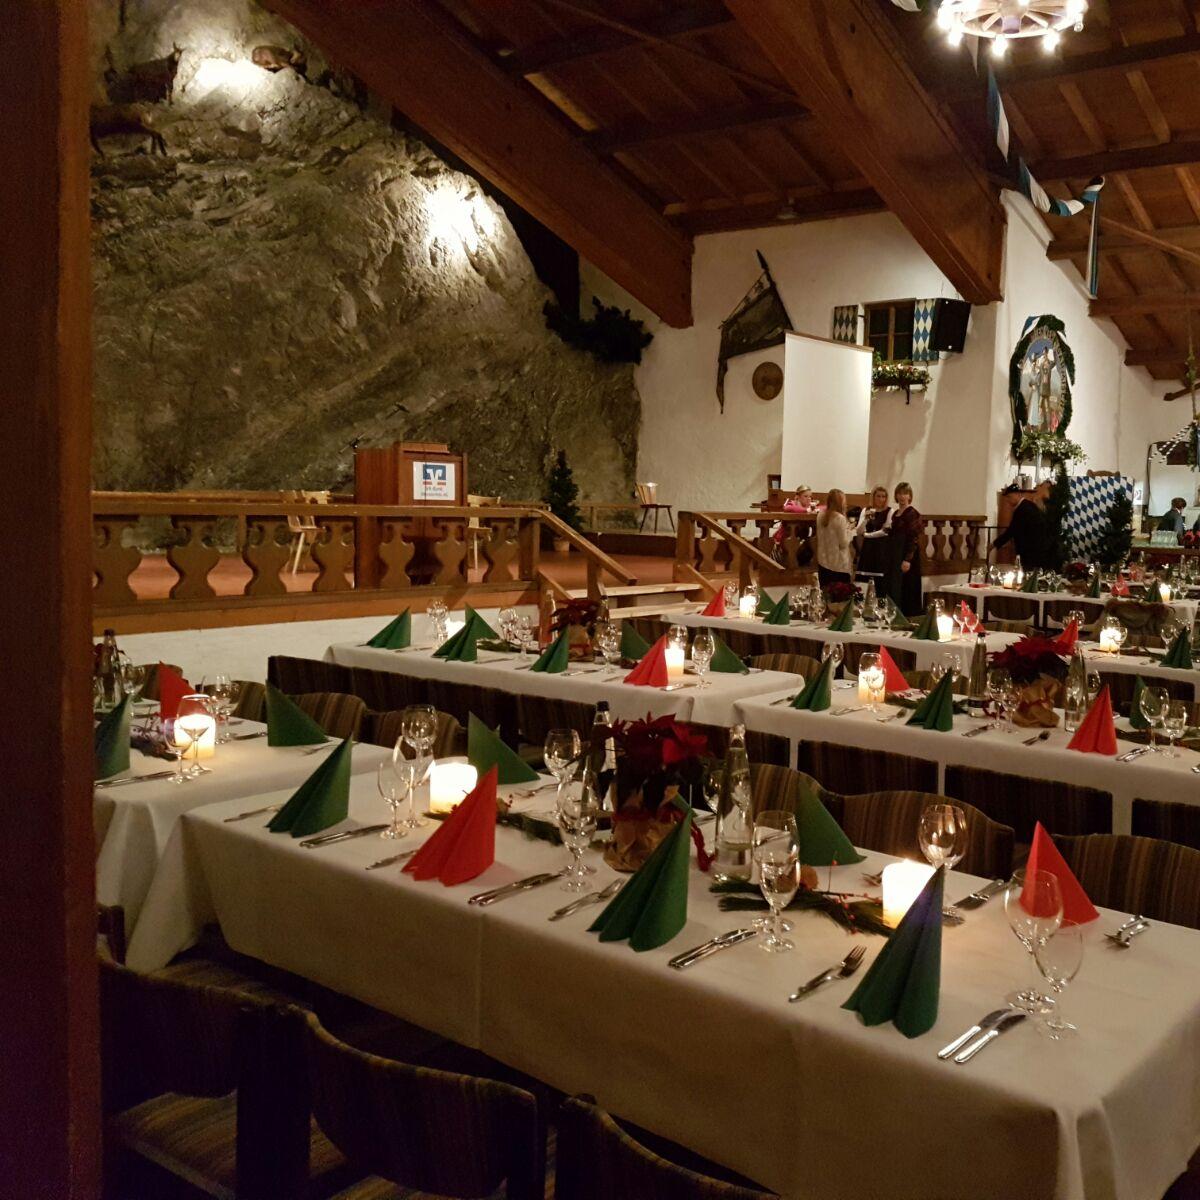 Restaurant "Gewerbegebiet Bayernhalle" in Garmisch-Partenkirchen